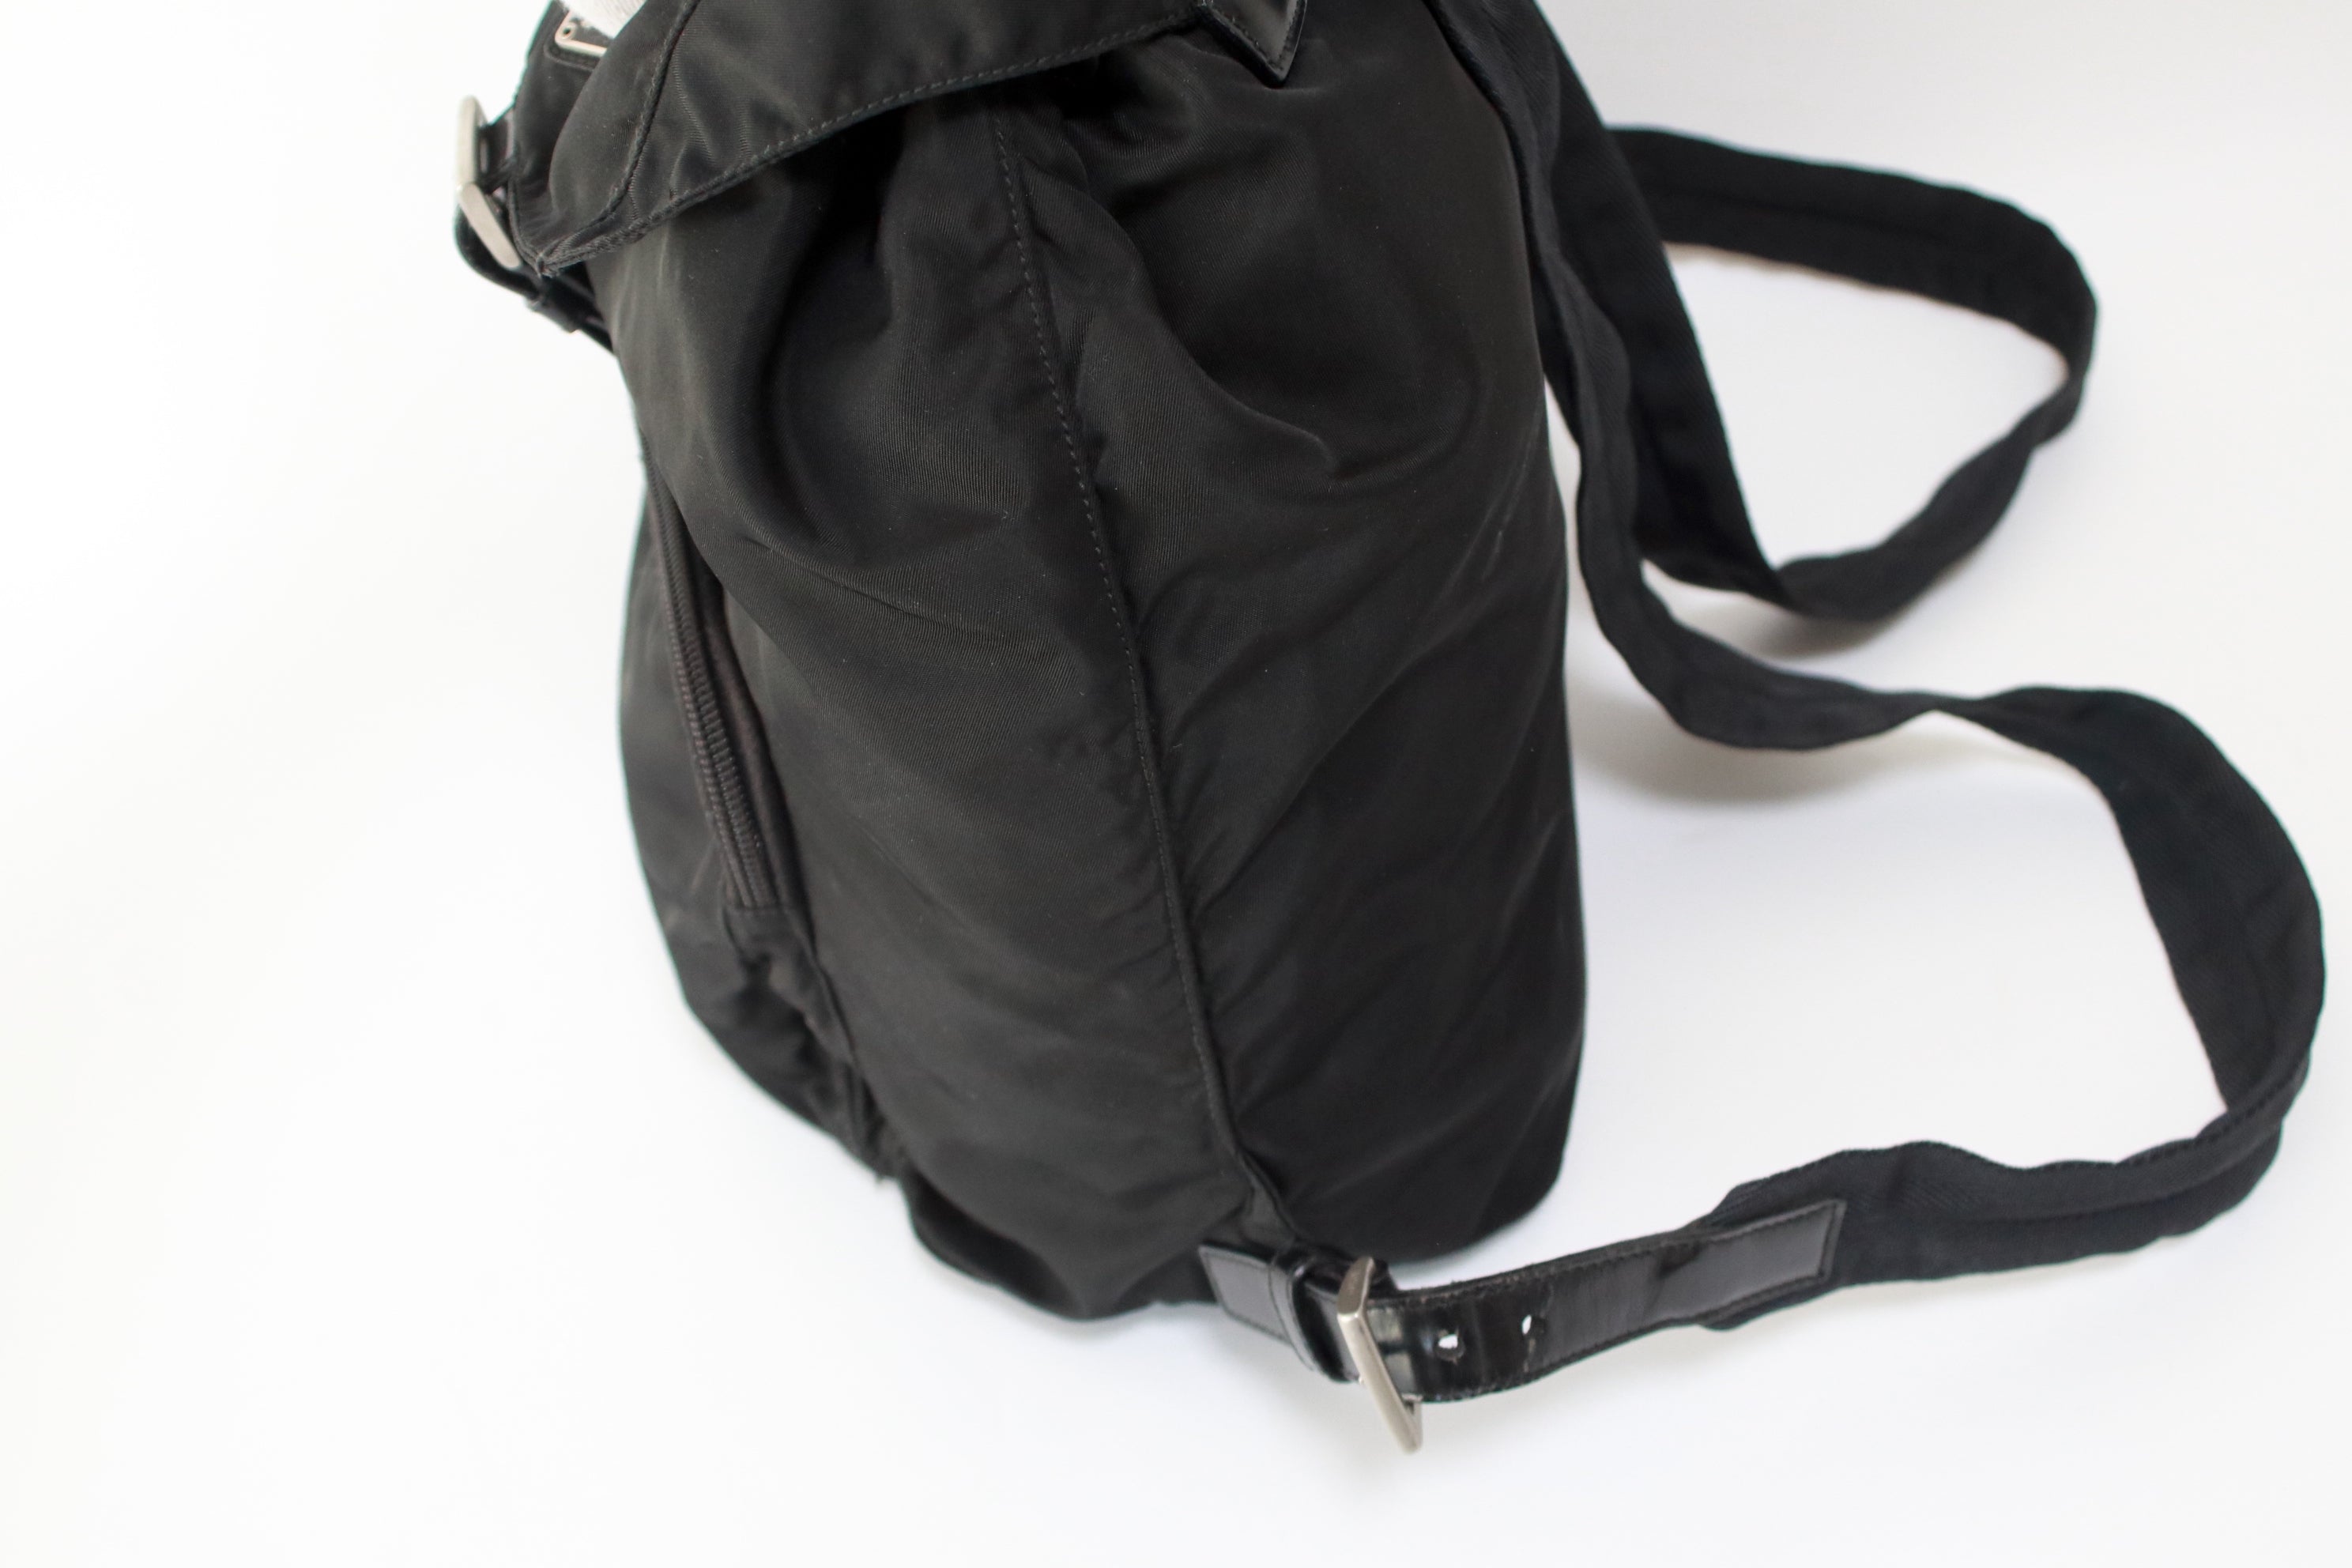 Prada Nylon Backpack Used (6126)